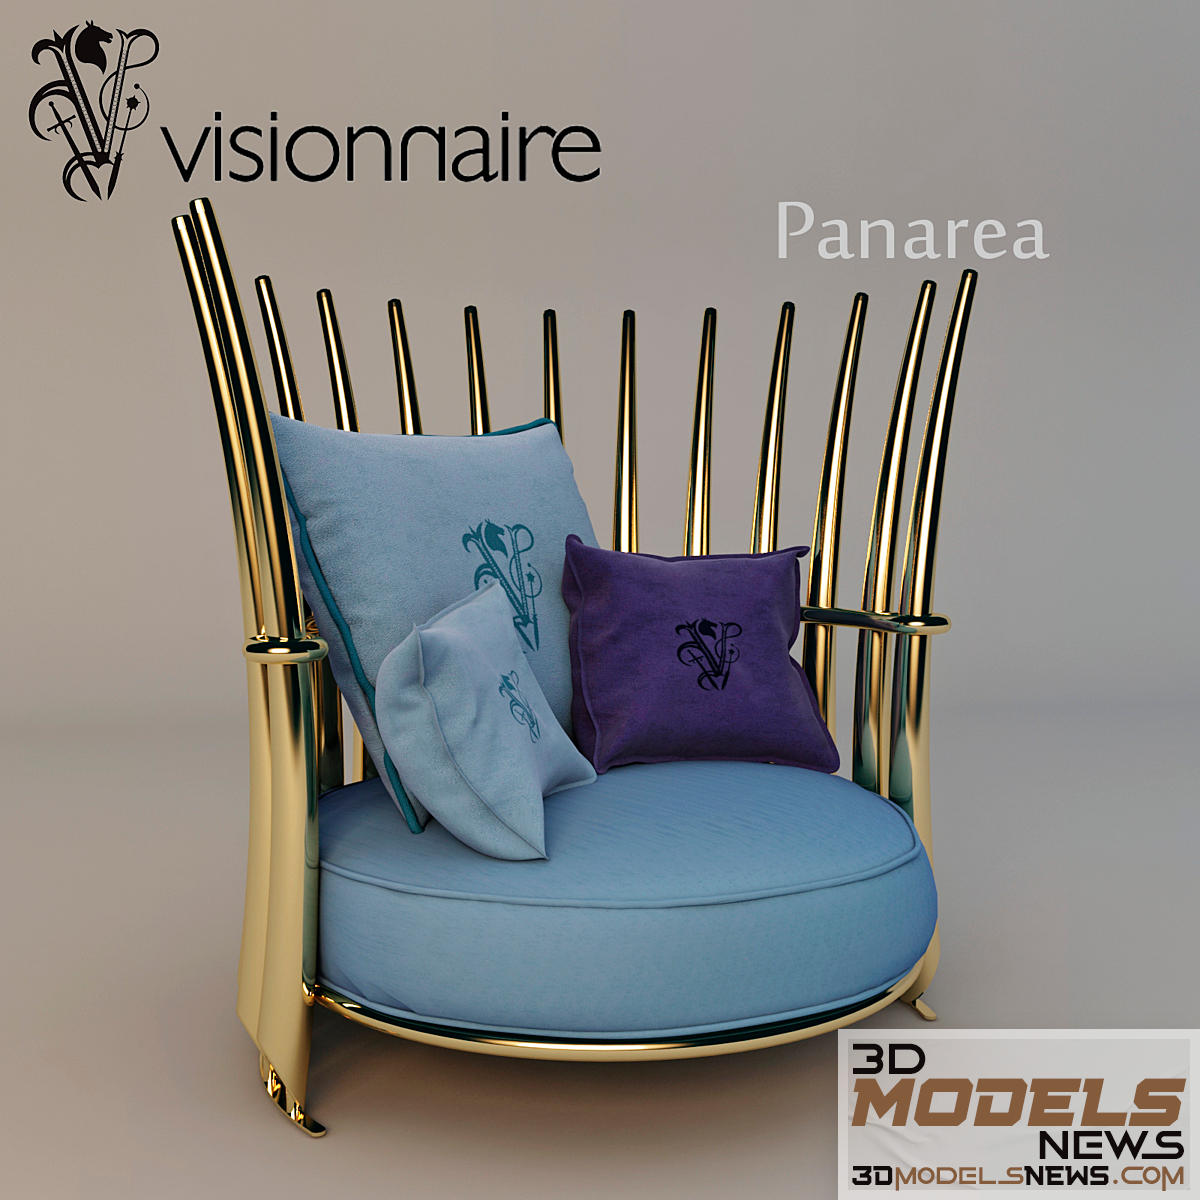 Visionnaire panarea armchair model